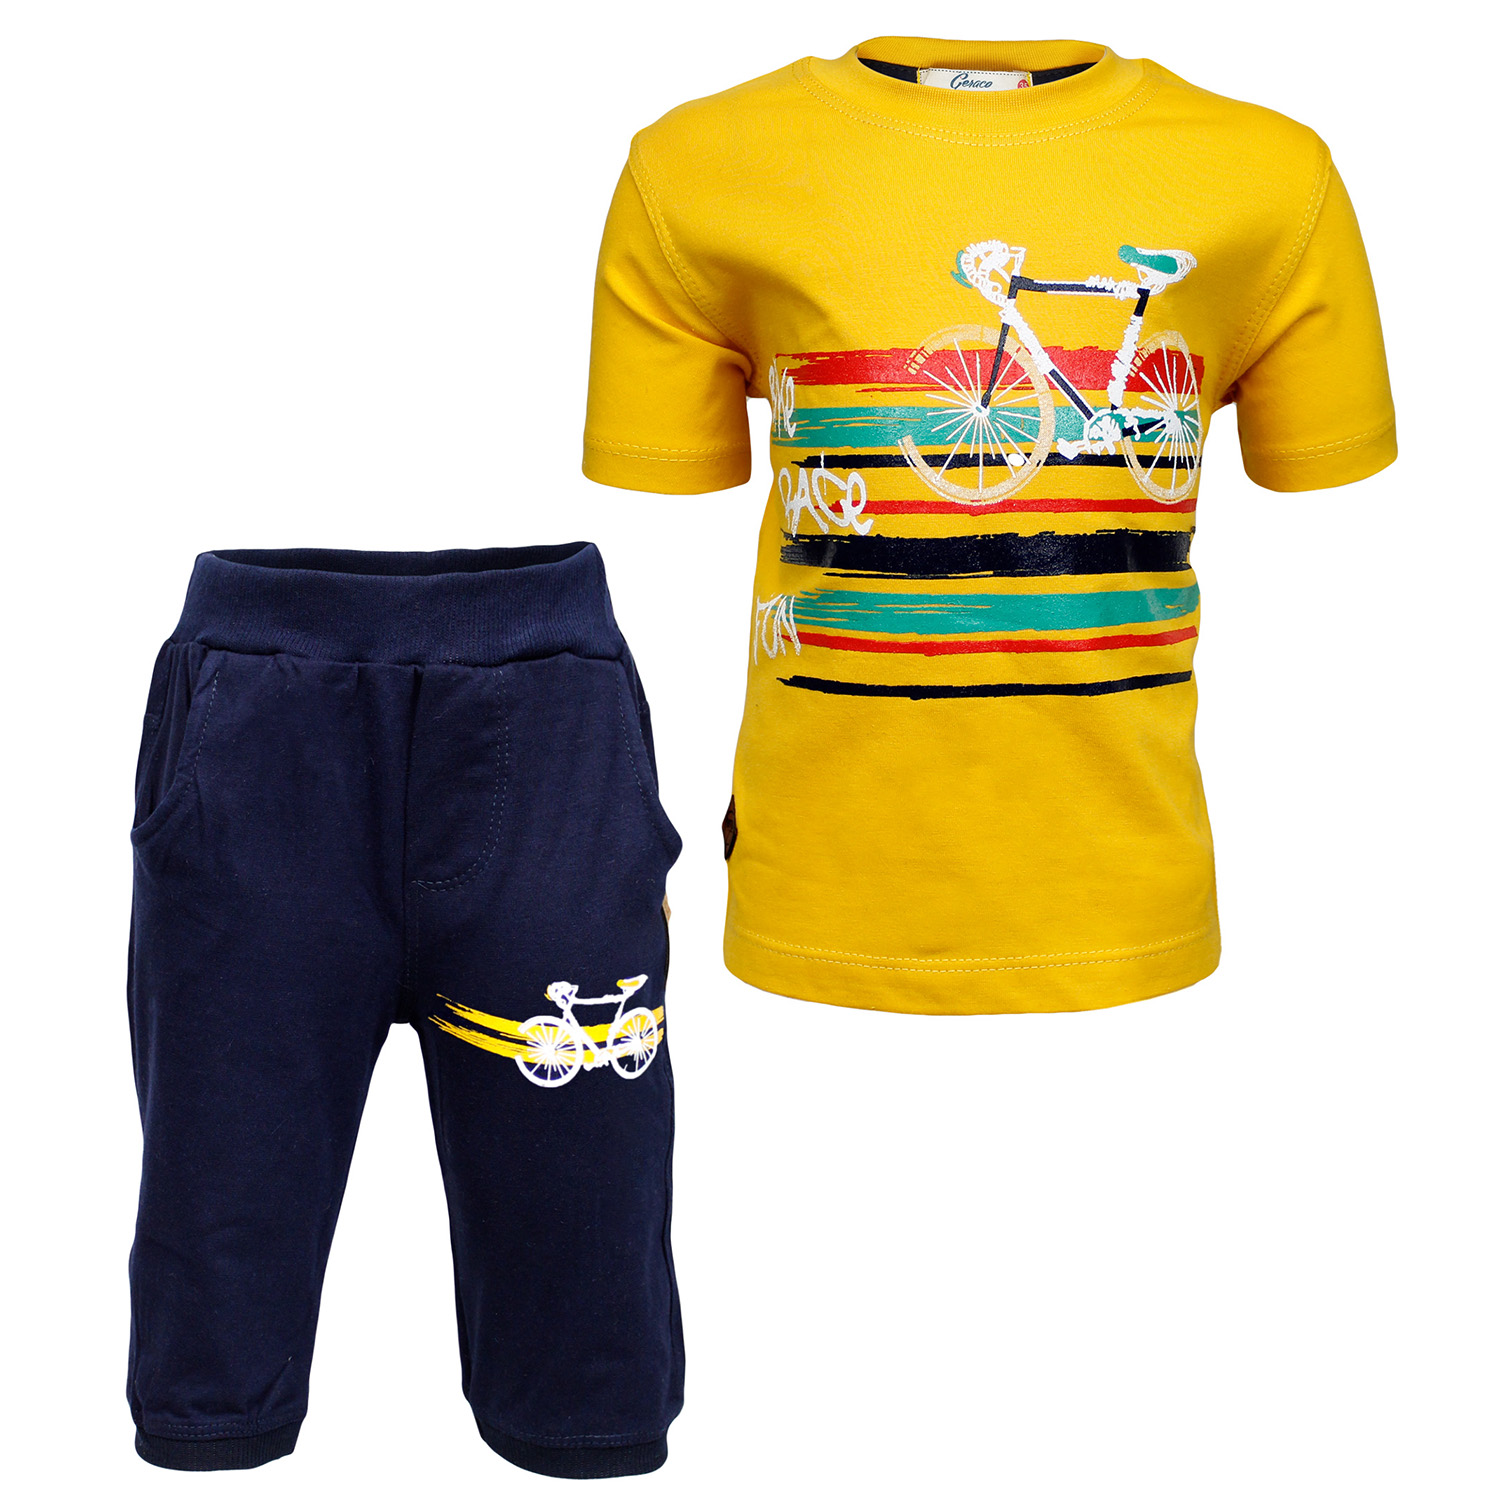 ست تی شرت و شلوارک پسرانه طرح دوچرخه کد 68 رنگ زرد